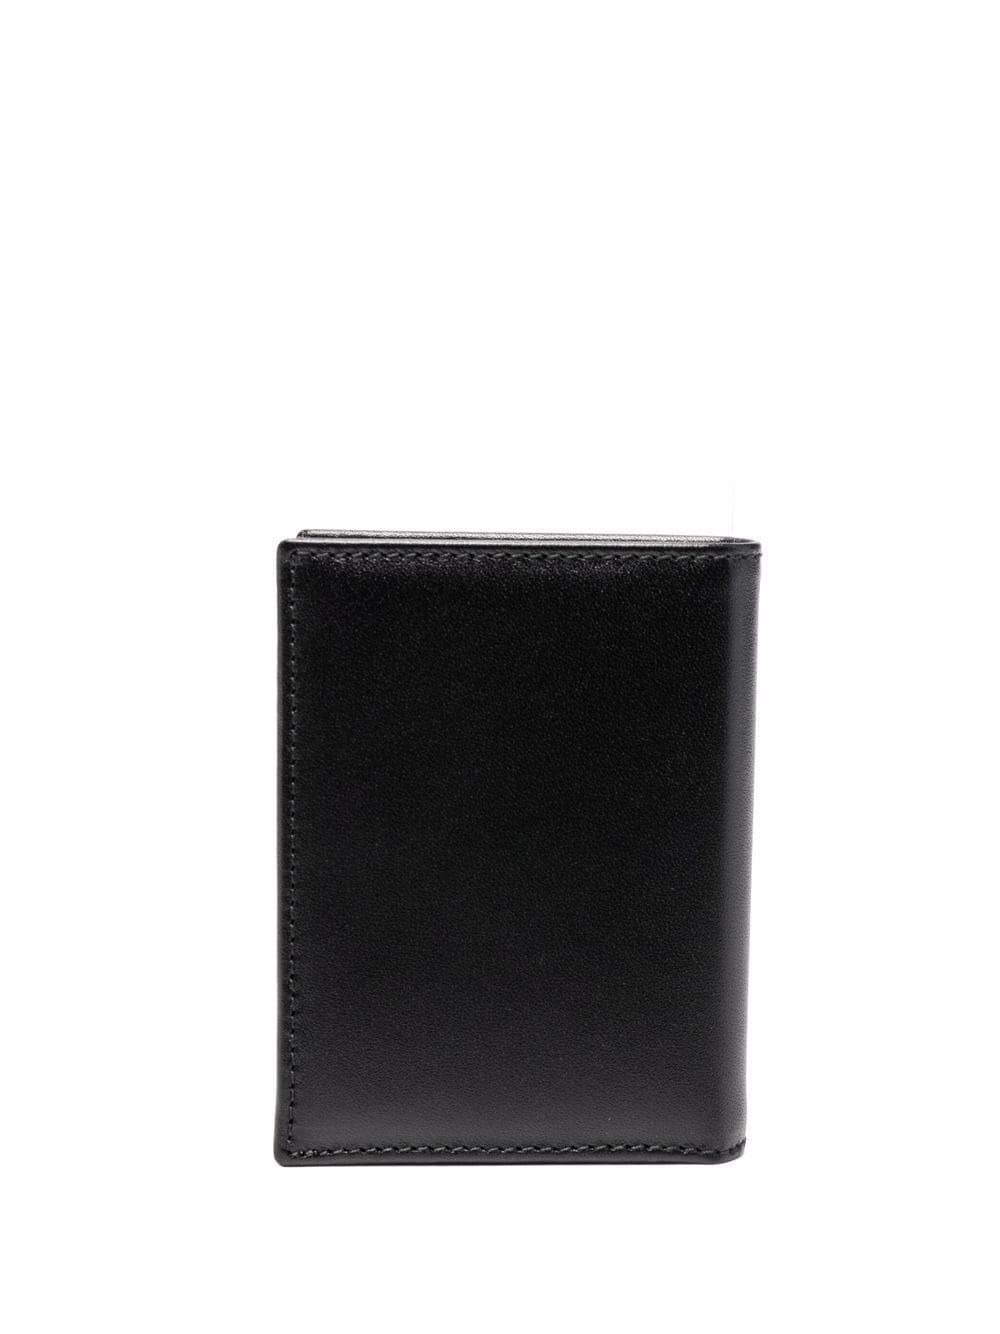 Shop Comme Des Garçons Classic Group Wallet In Black